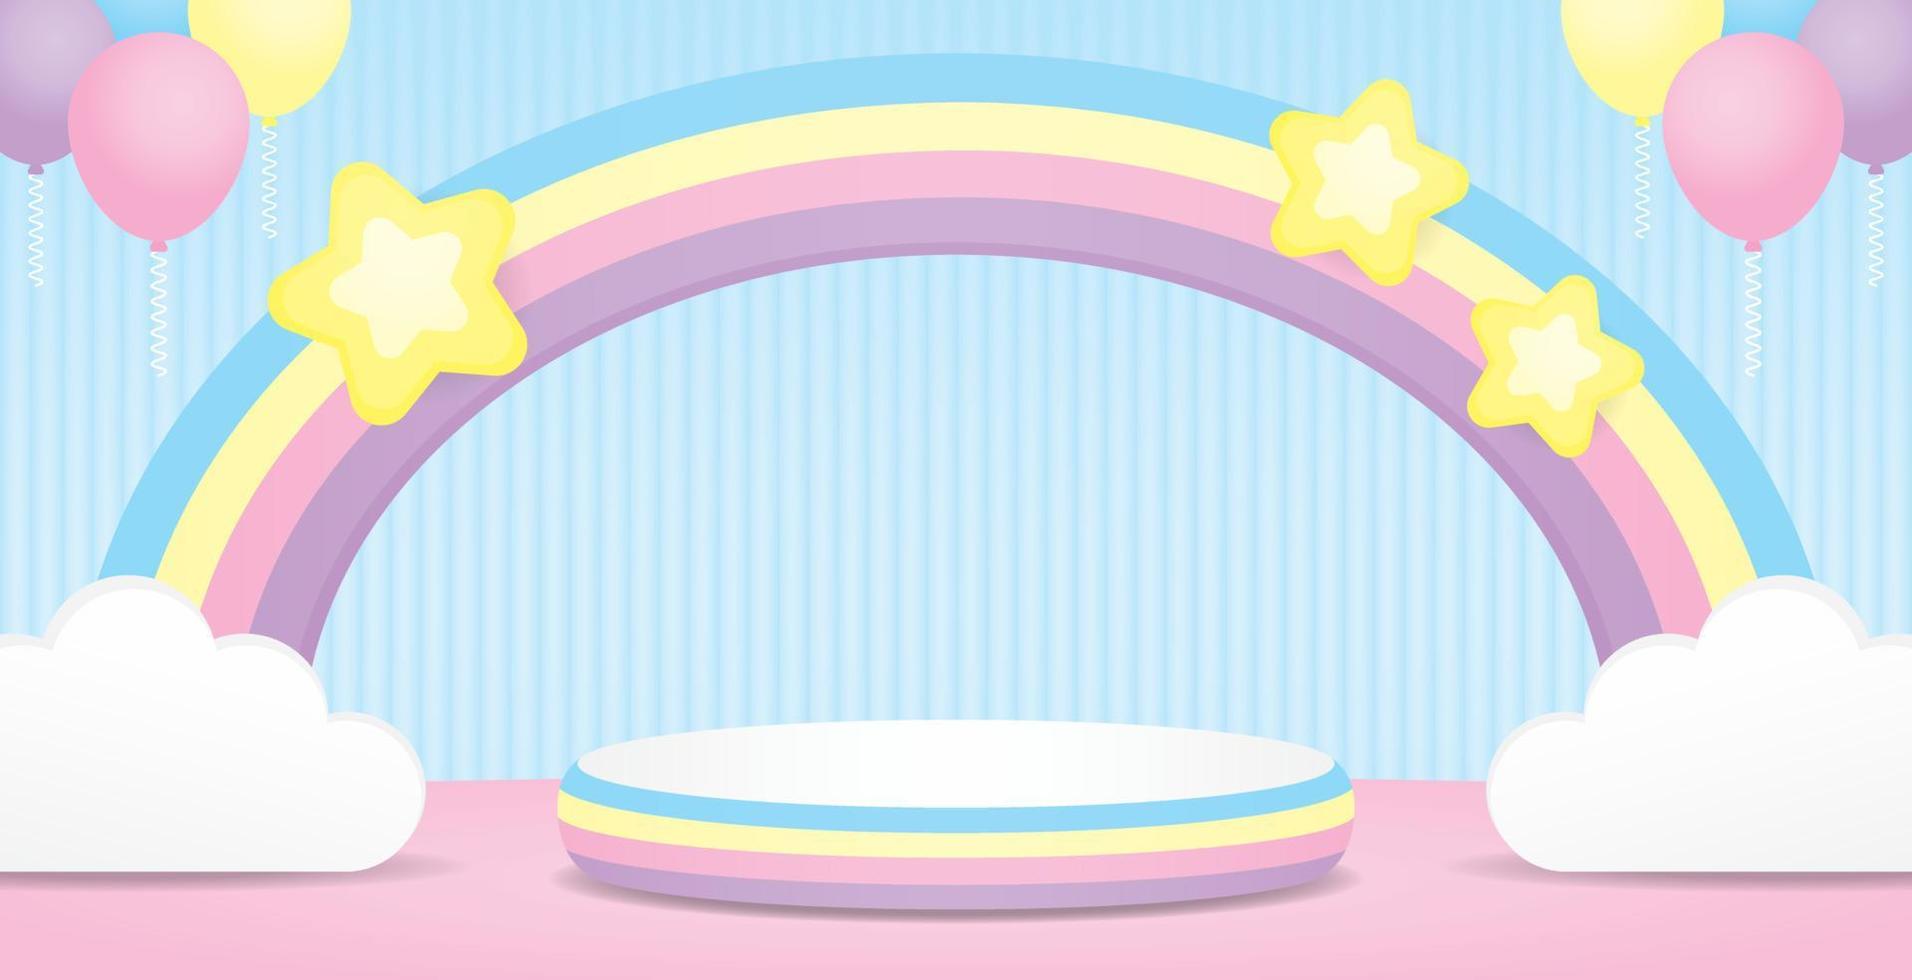 linda vistoso podio monitor etapa y pastel arco iris arco con kawaii estrellas y nube y globos en dulce azul pared antecedentes 3d ilustración vector para poniendo objeto o producto